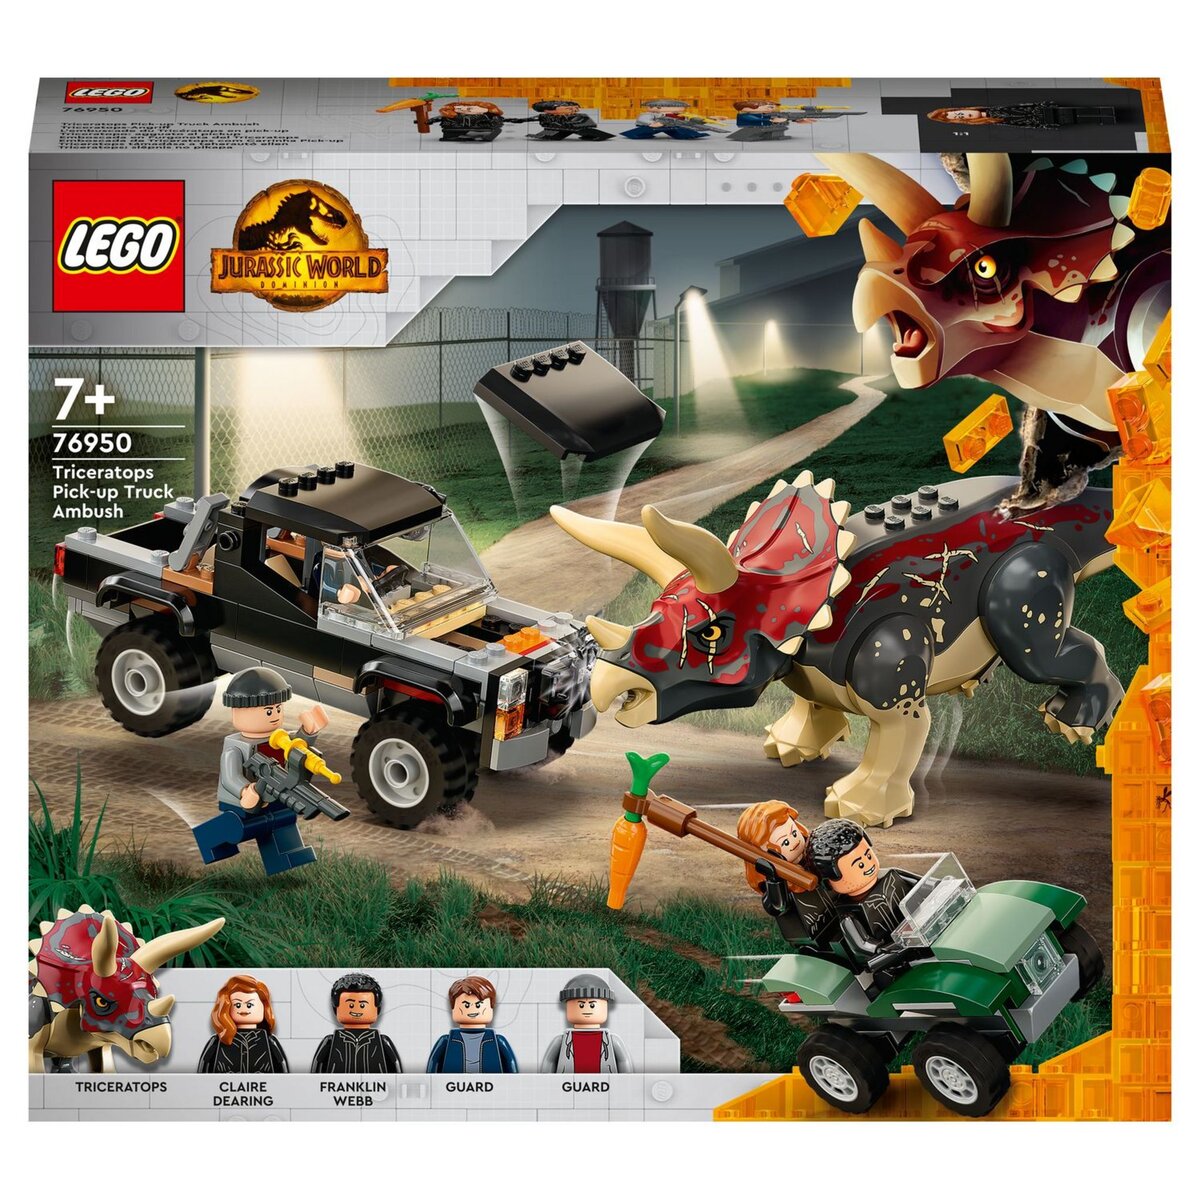 LEGO Jurassic World 76944 pas cher, L'évasion du T. rex